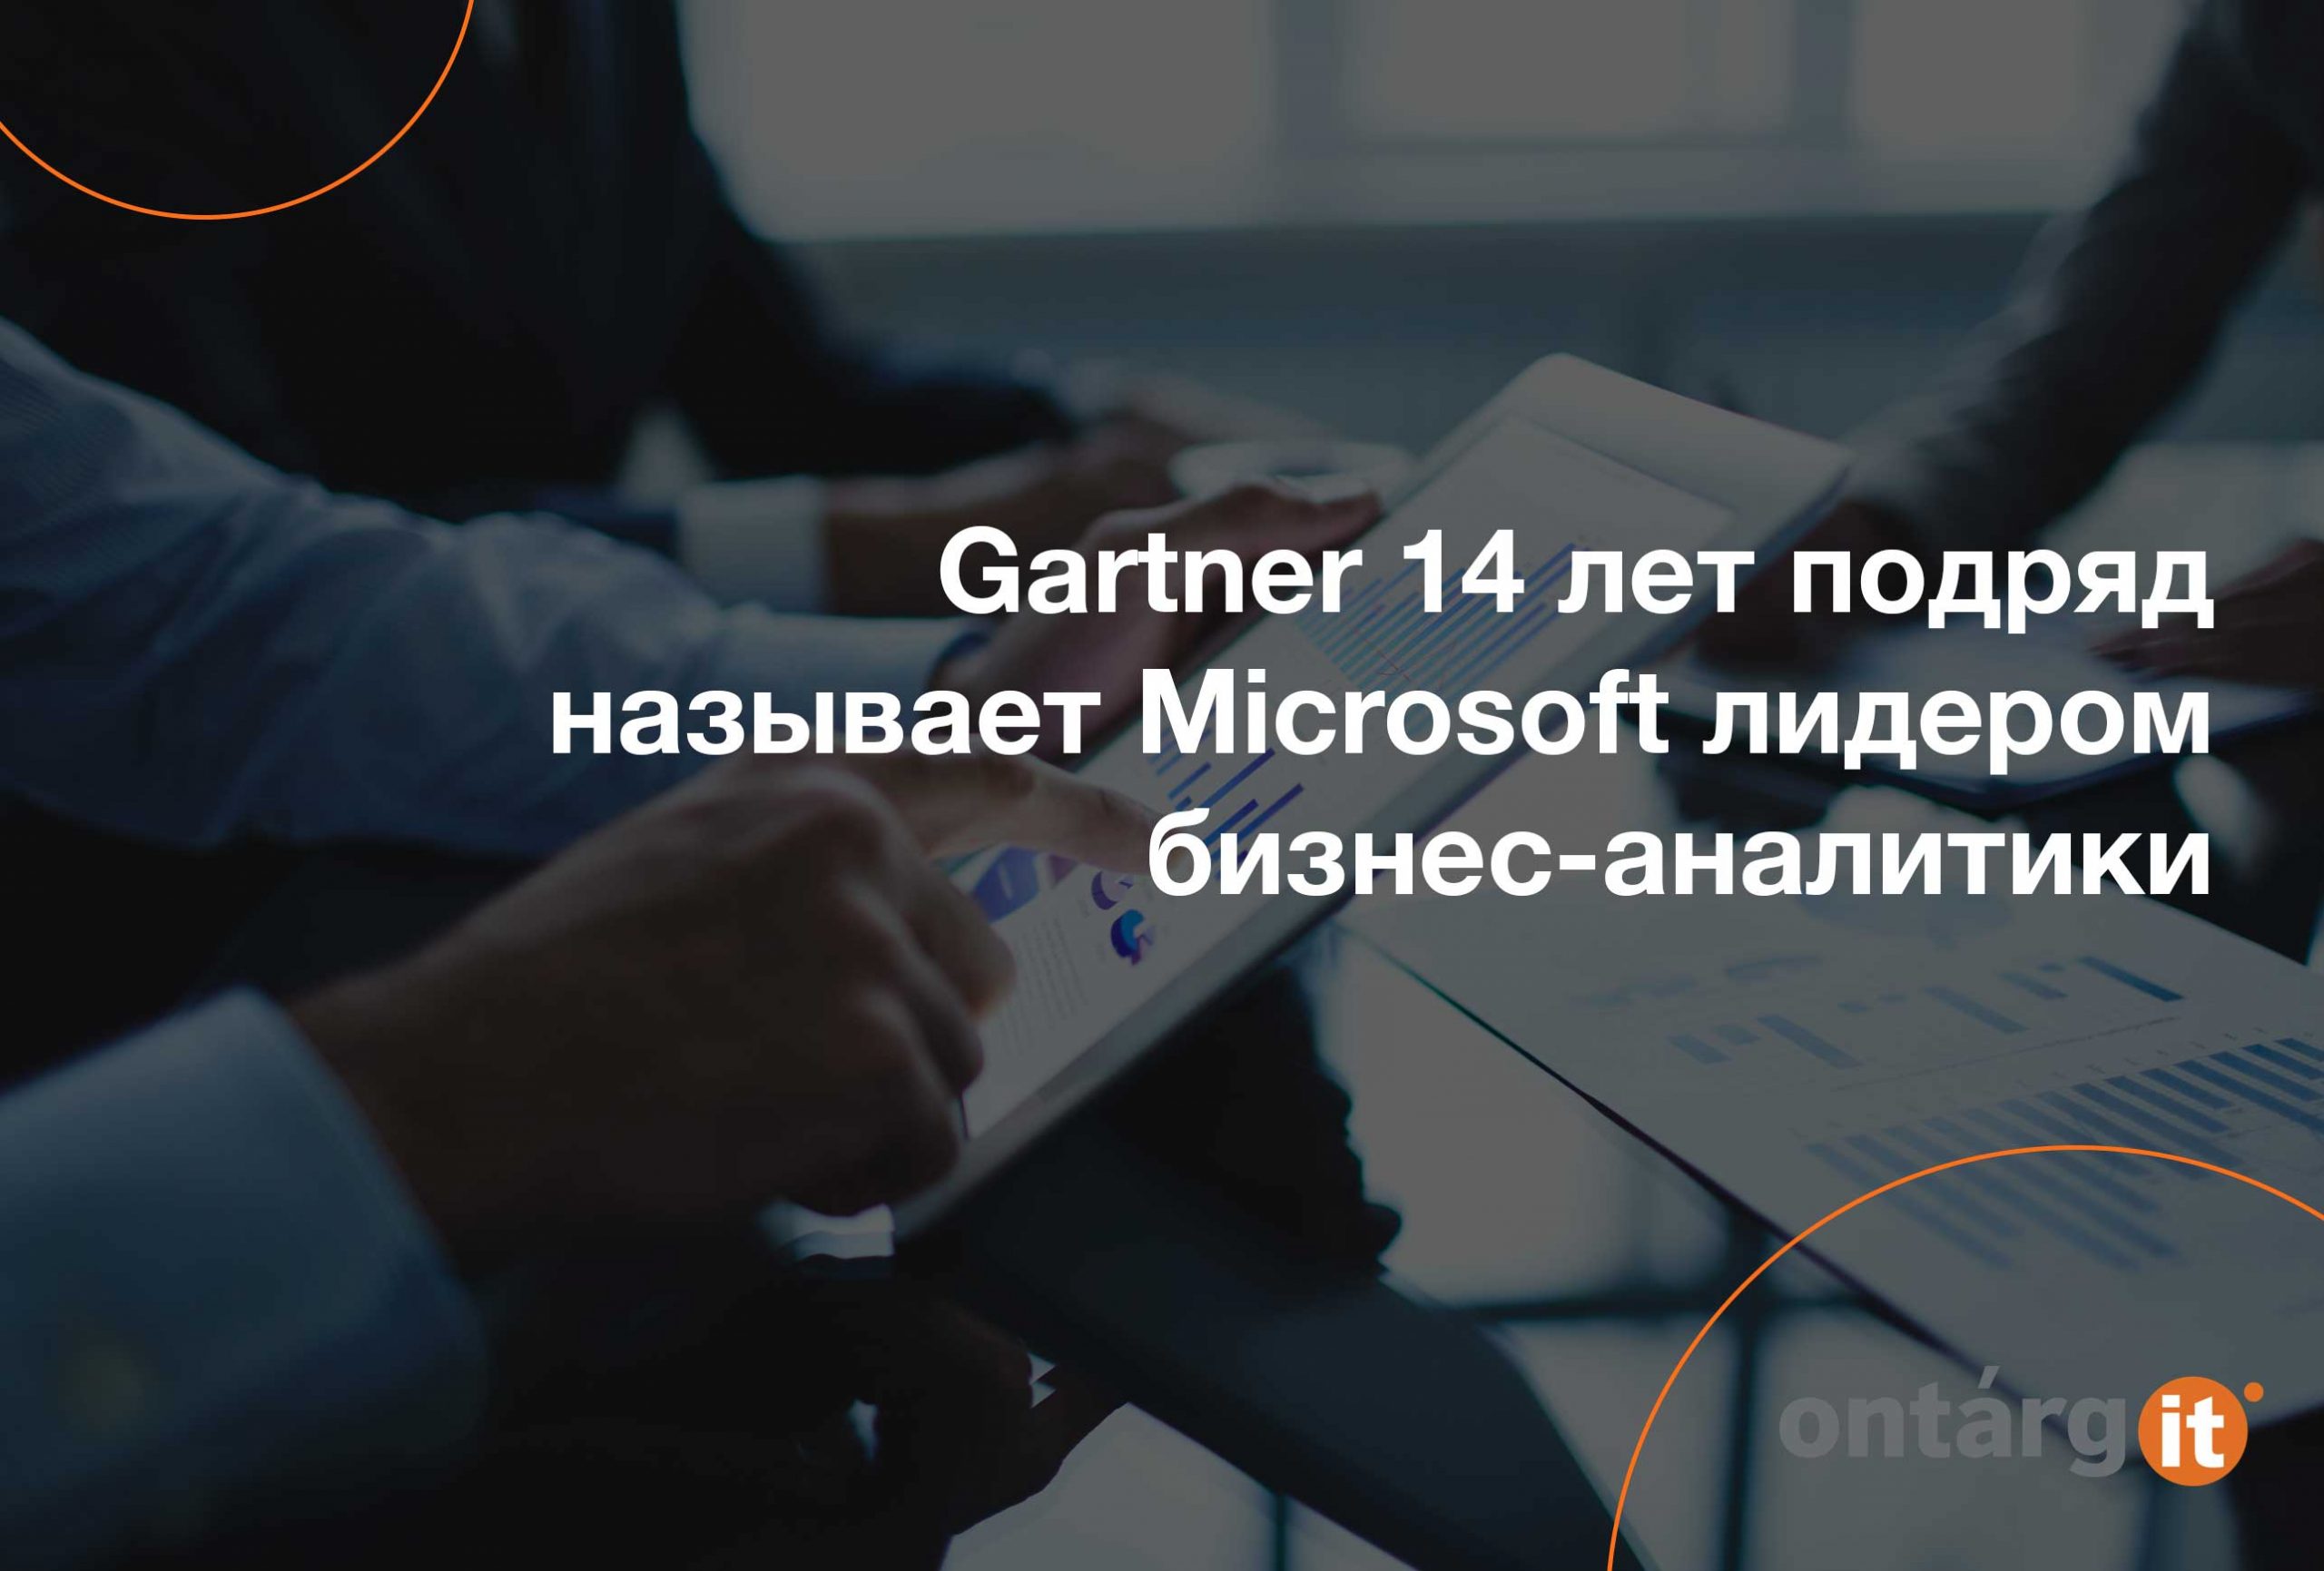 Gartner-14 -лет-подряд-называет-Microsoft-лидером-бизнес-аналитики